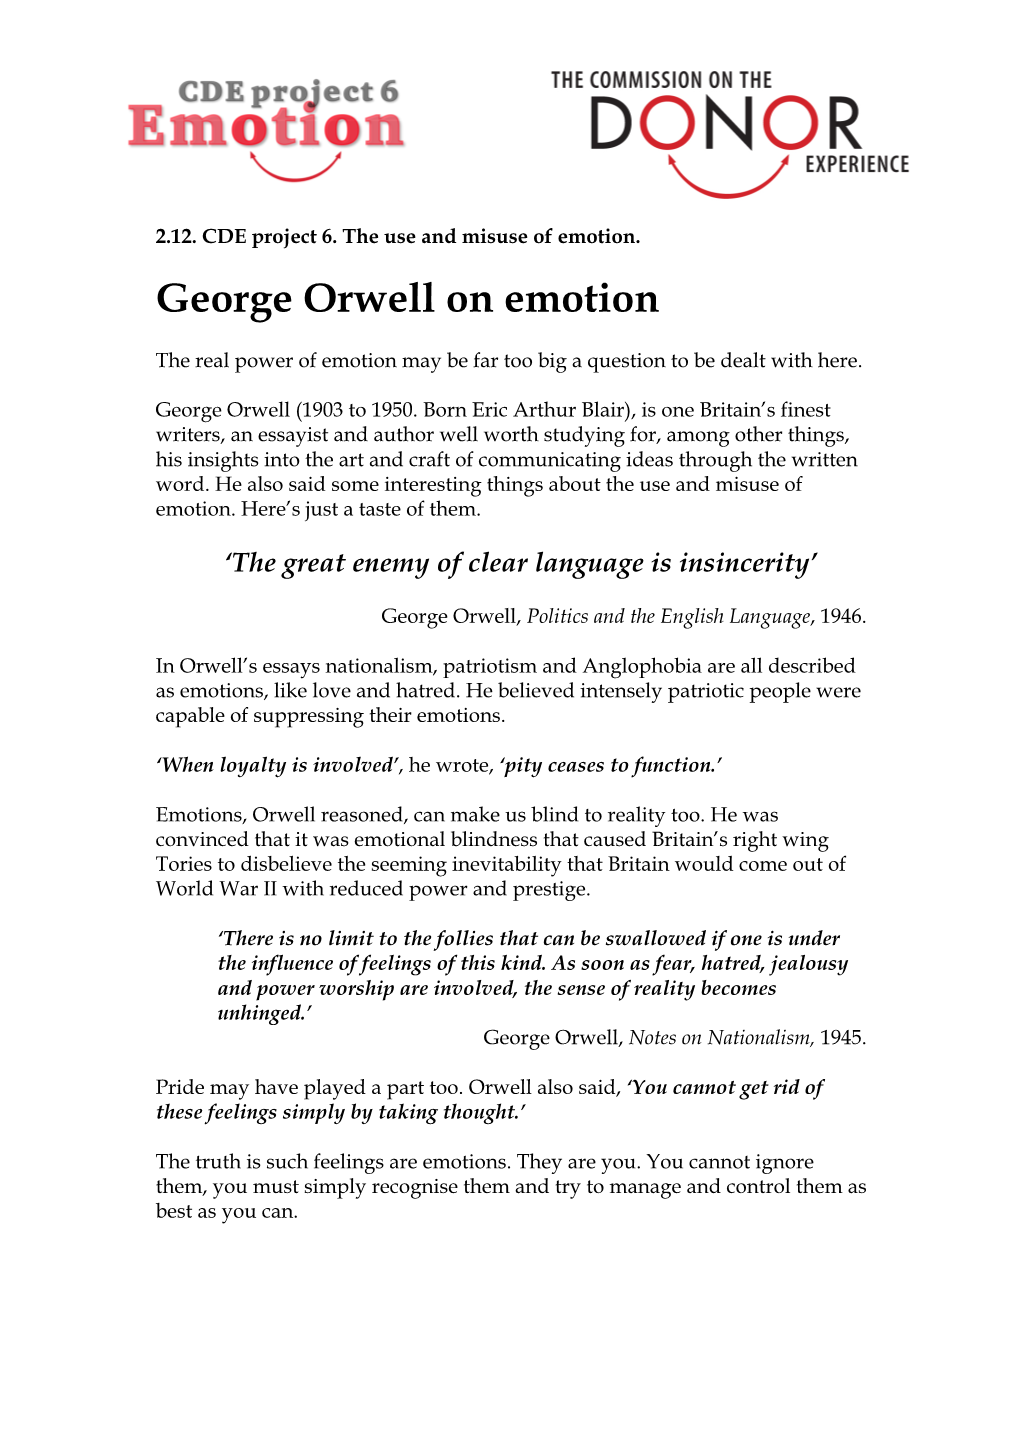 2.10. George Orwell on Emotion